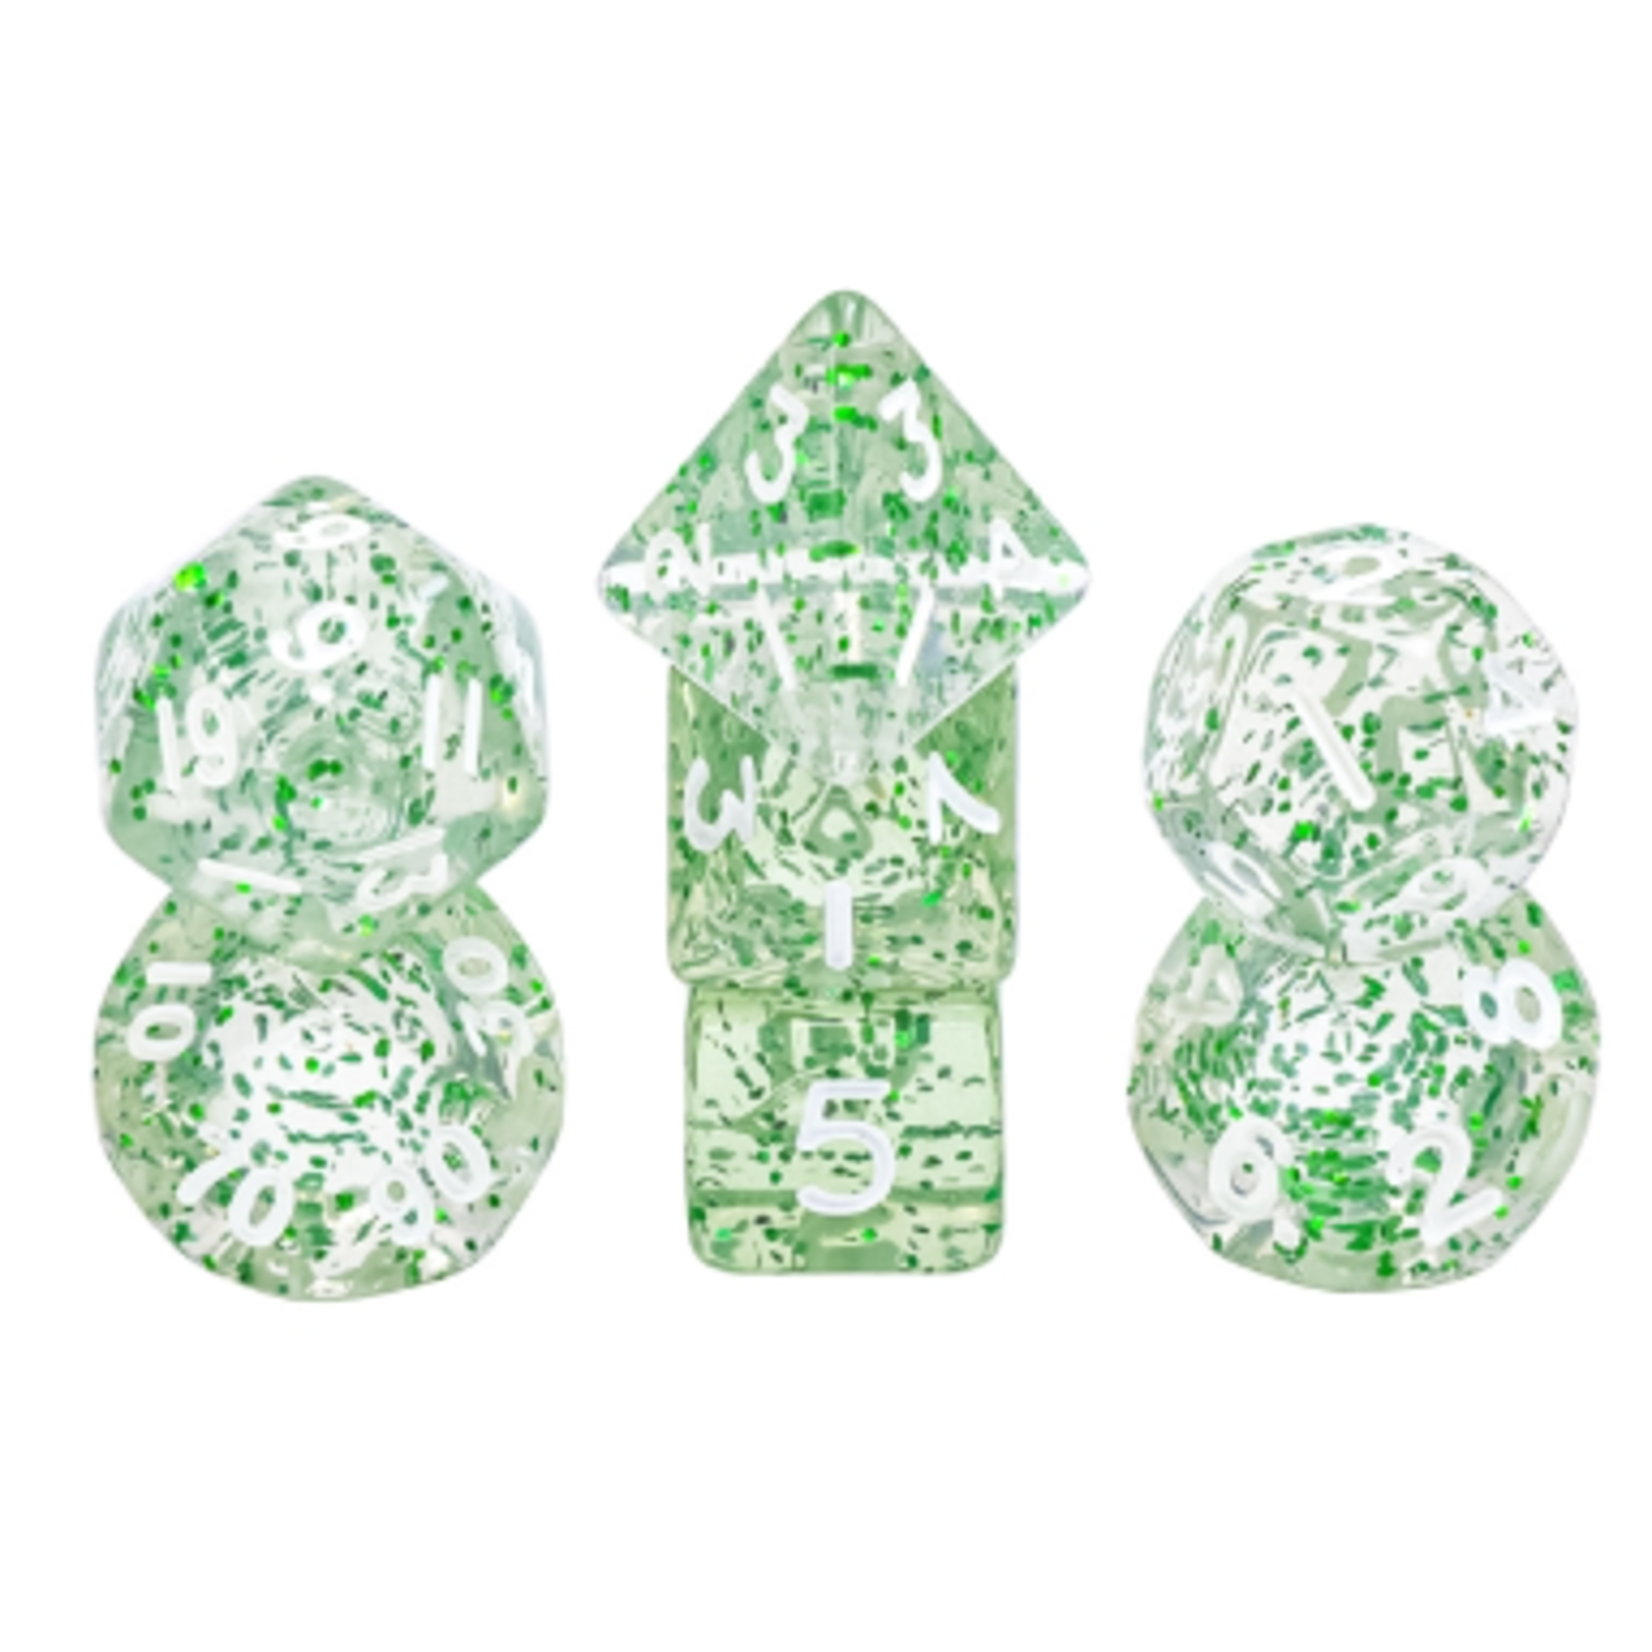 7 Set MINI Polyhedral Dice - Green Glitter